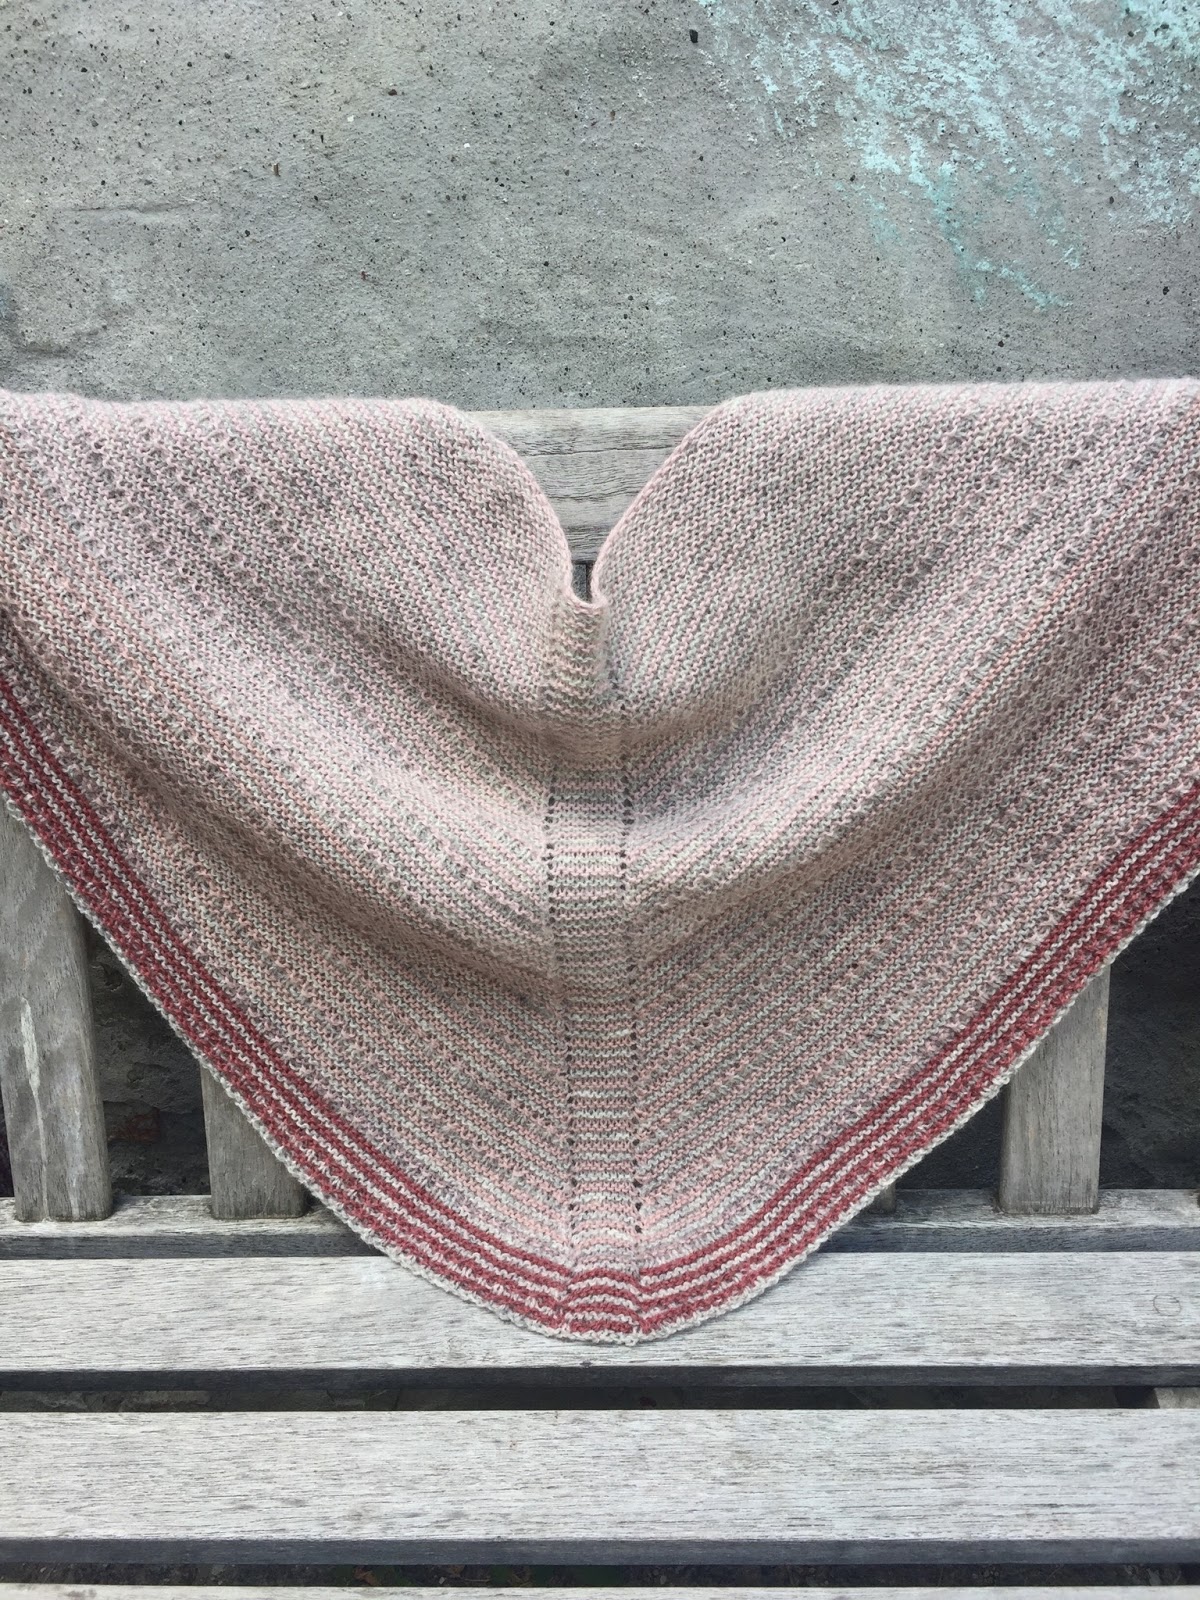 resident Etablering Erhverv TUSINDFRYD: Mit Sjal - En gratis strikkeopskrift på et begyndervenligt sjal